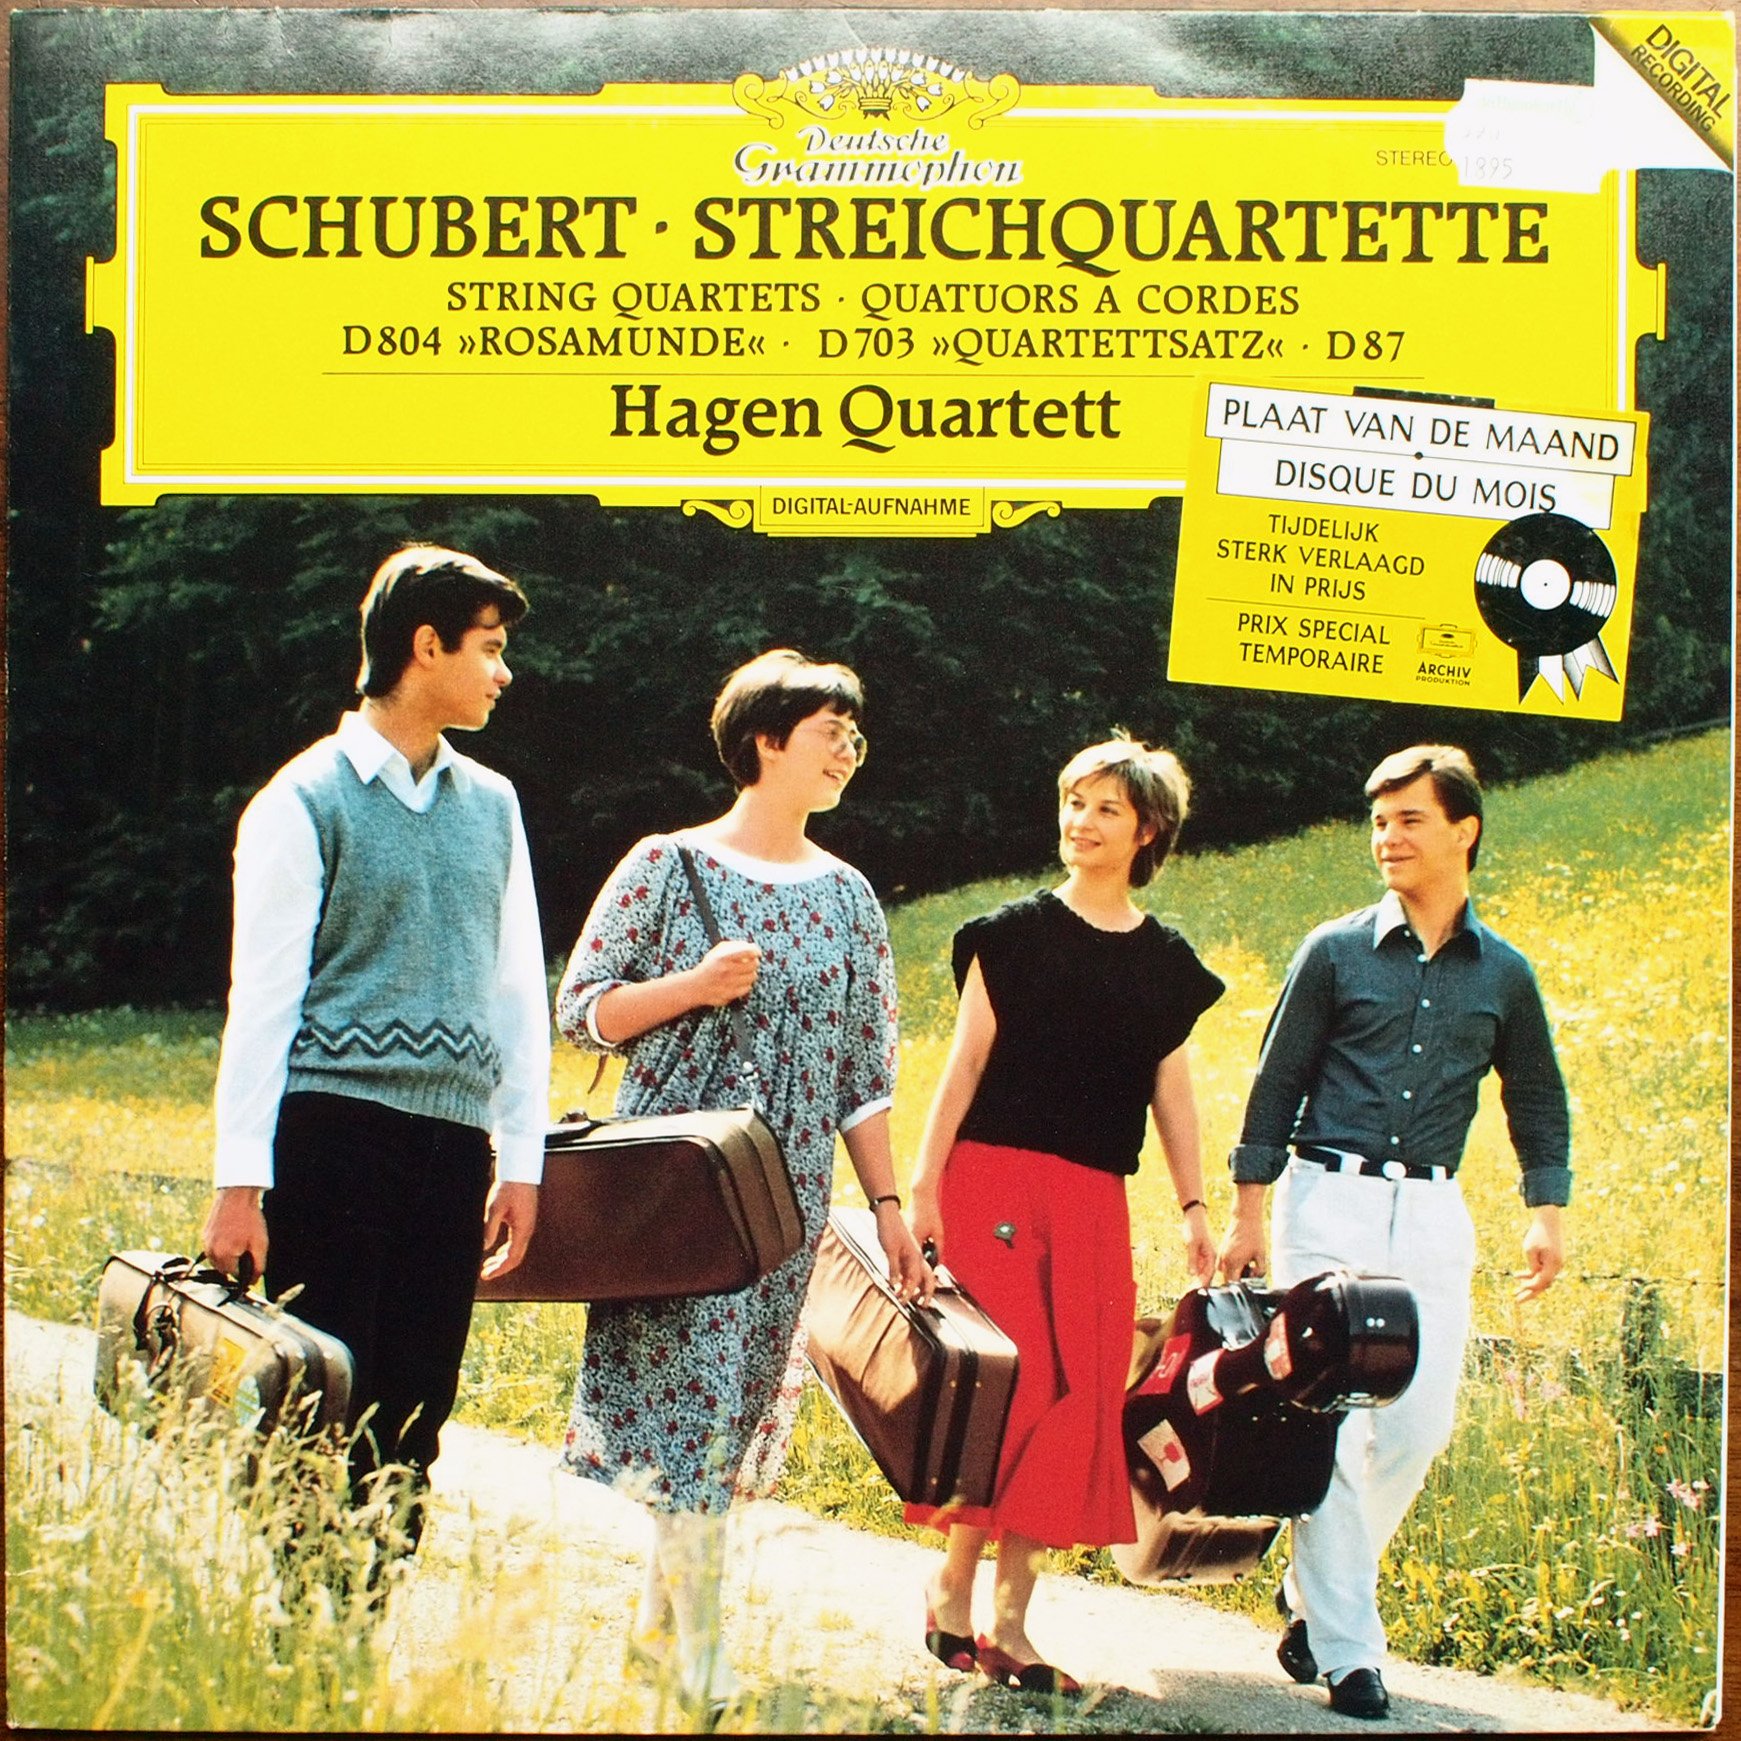  DGG 419 171 Franz Schubert Streichquartette D804 